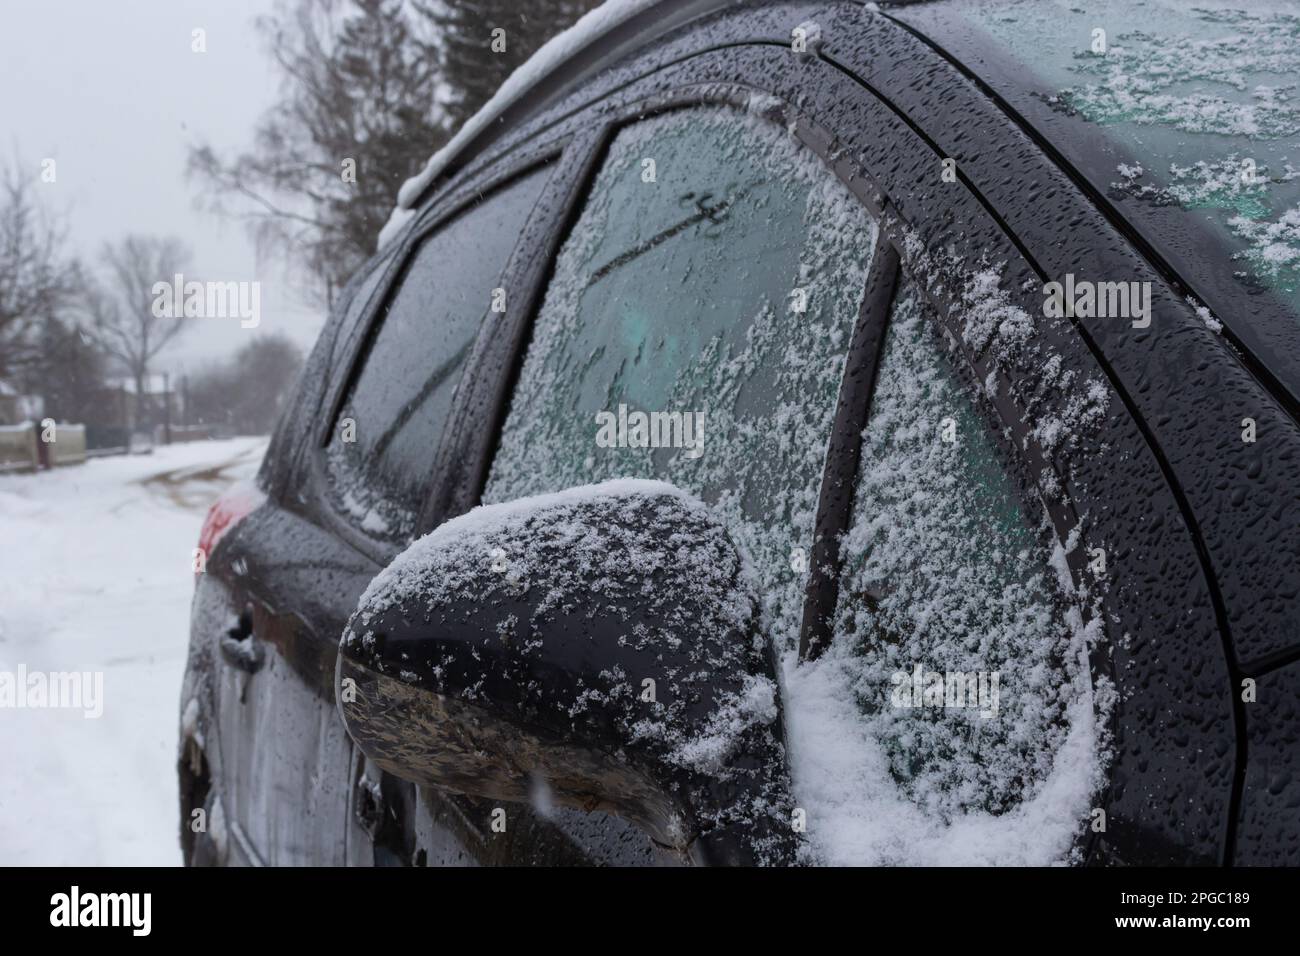 Frischer Schnee bedeckt die Umgebung und den Autospiegel, Schneetextur auf einer Metalloberfläche, Winter. Stockfoto